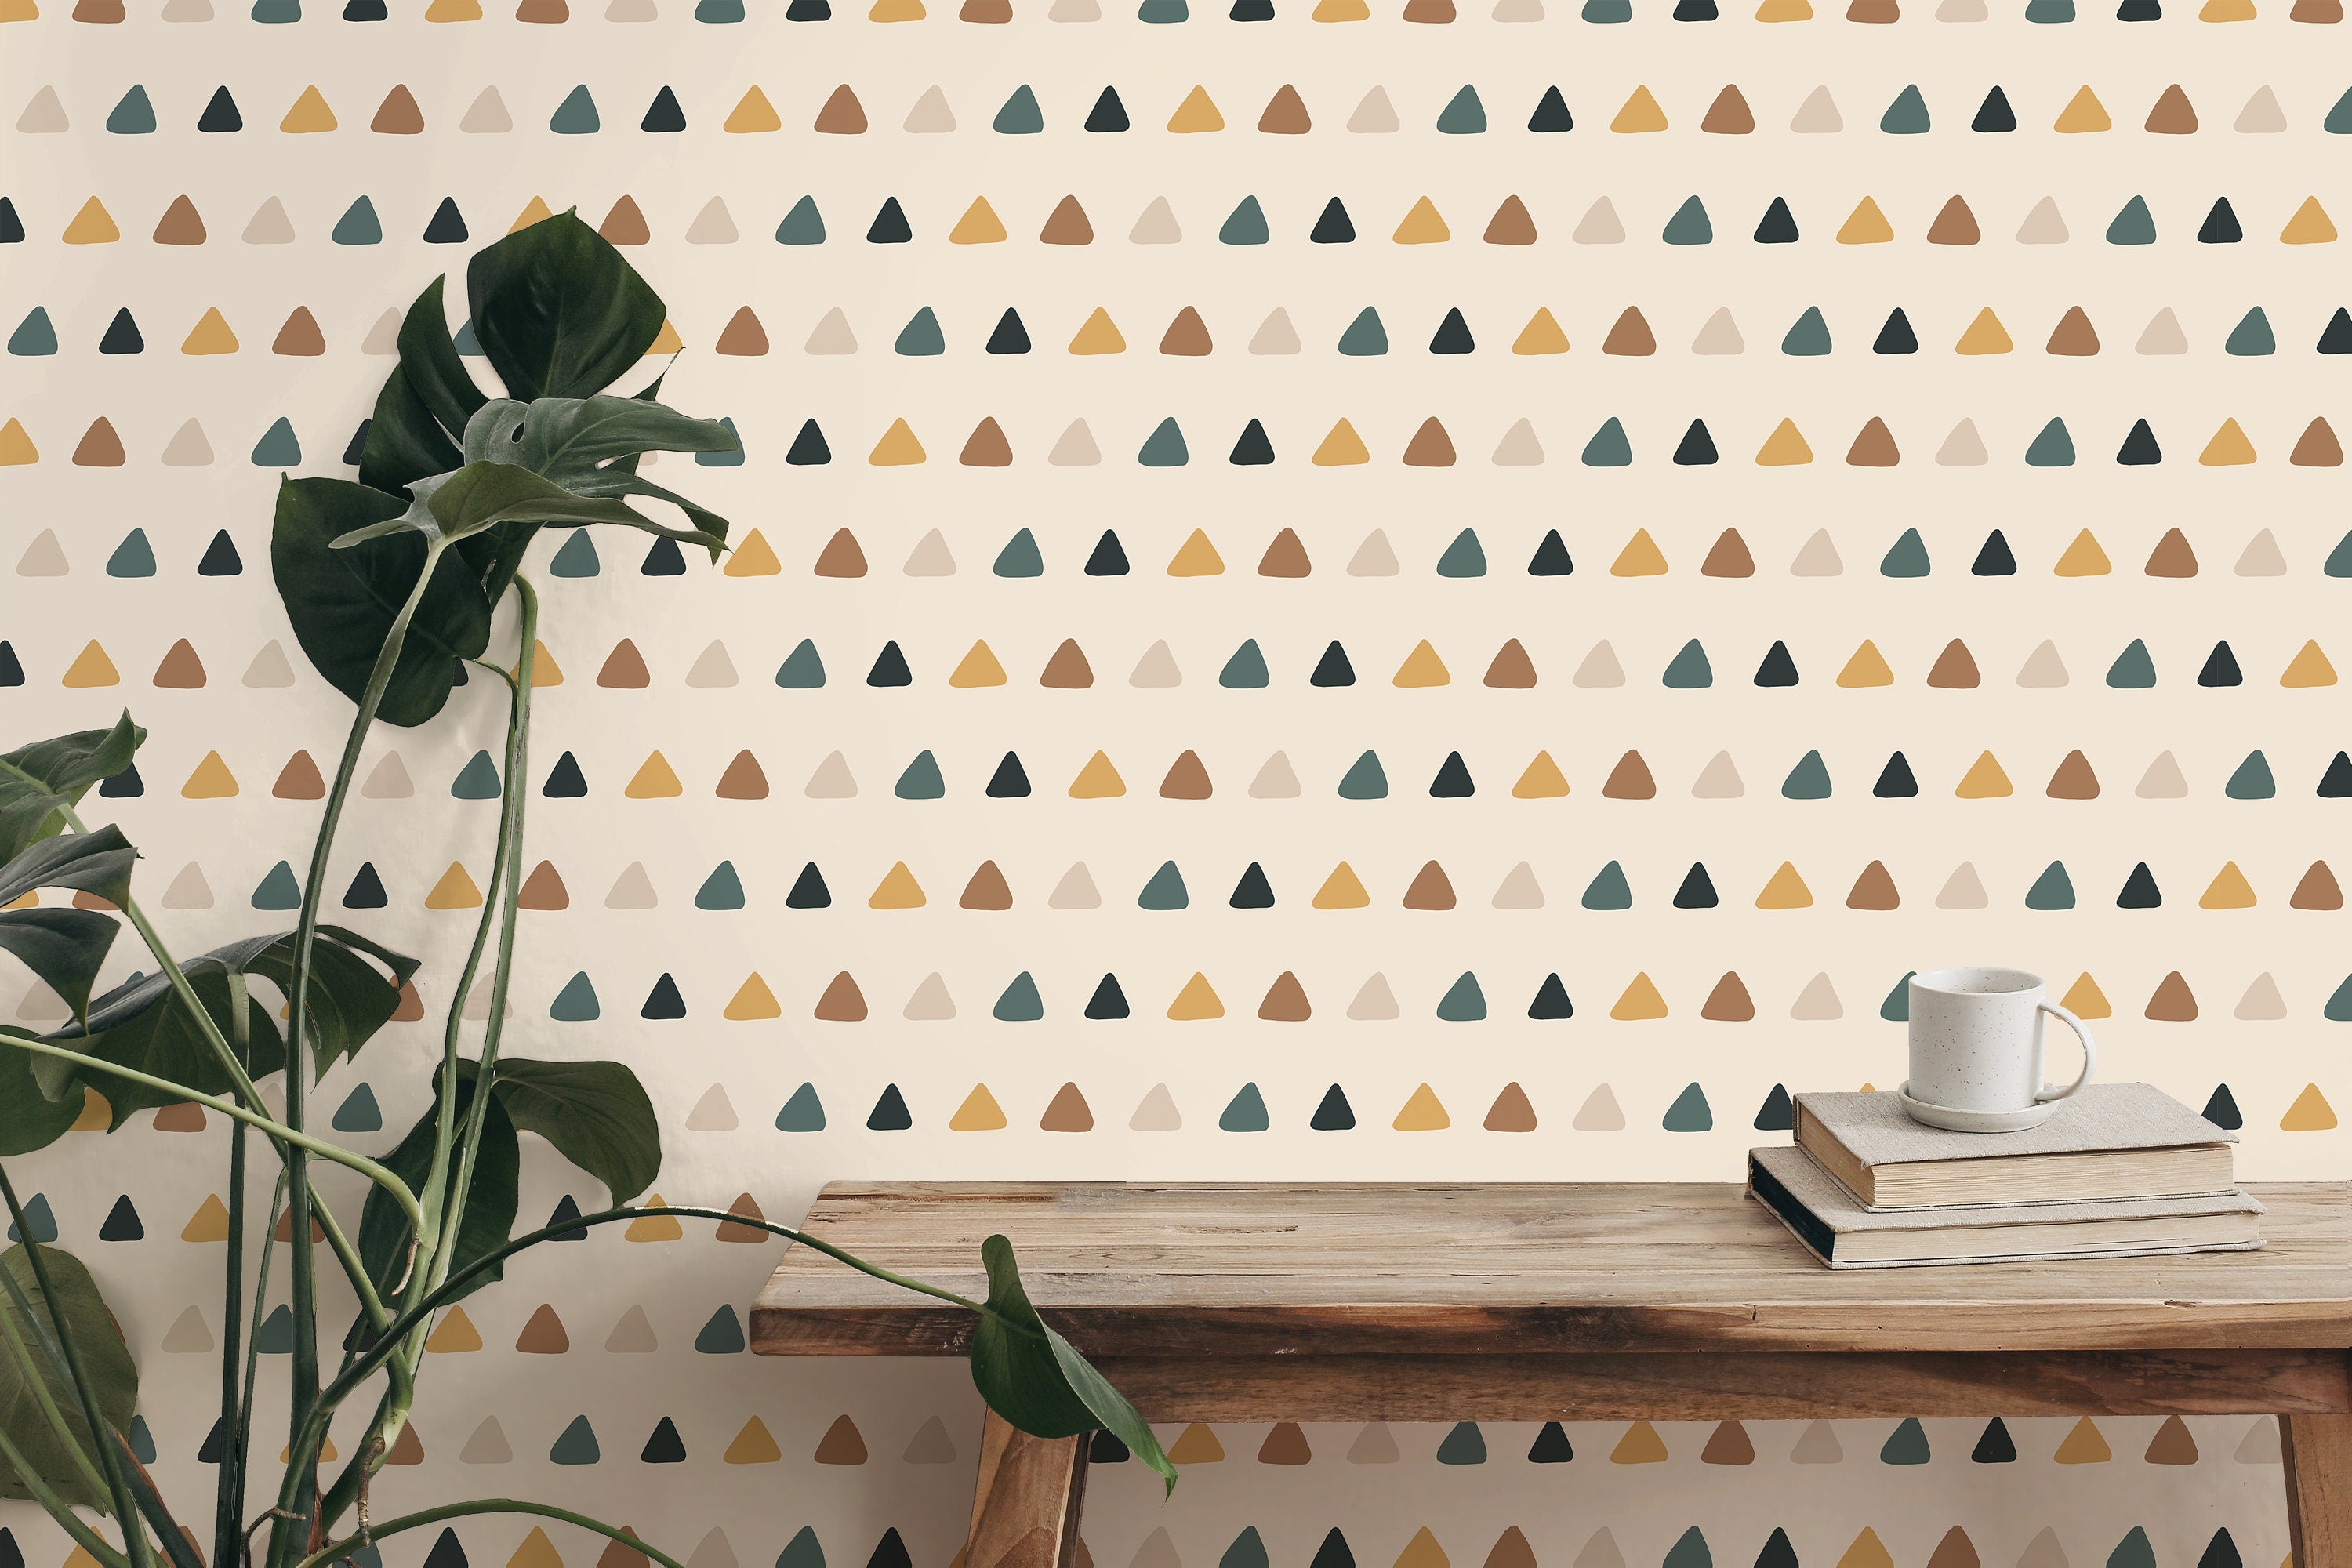 Desert Triangle Boho Wallpaper | Wallpaper Peel and Stick | Removable Wallpaper | Peel and Stick Wallpaper | Wall Paper Peel And Stick  2377 - JamesAndColors